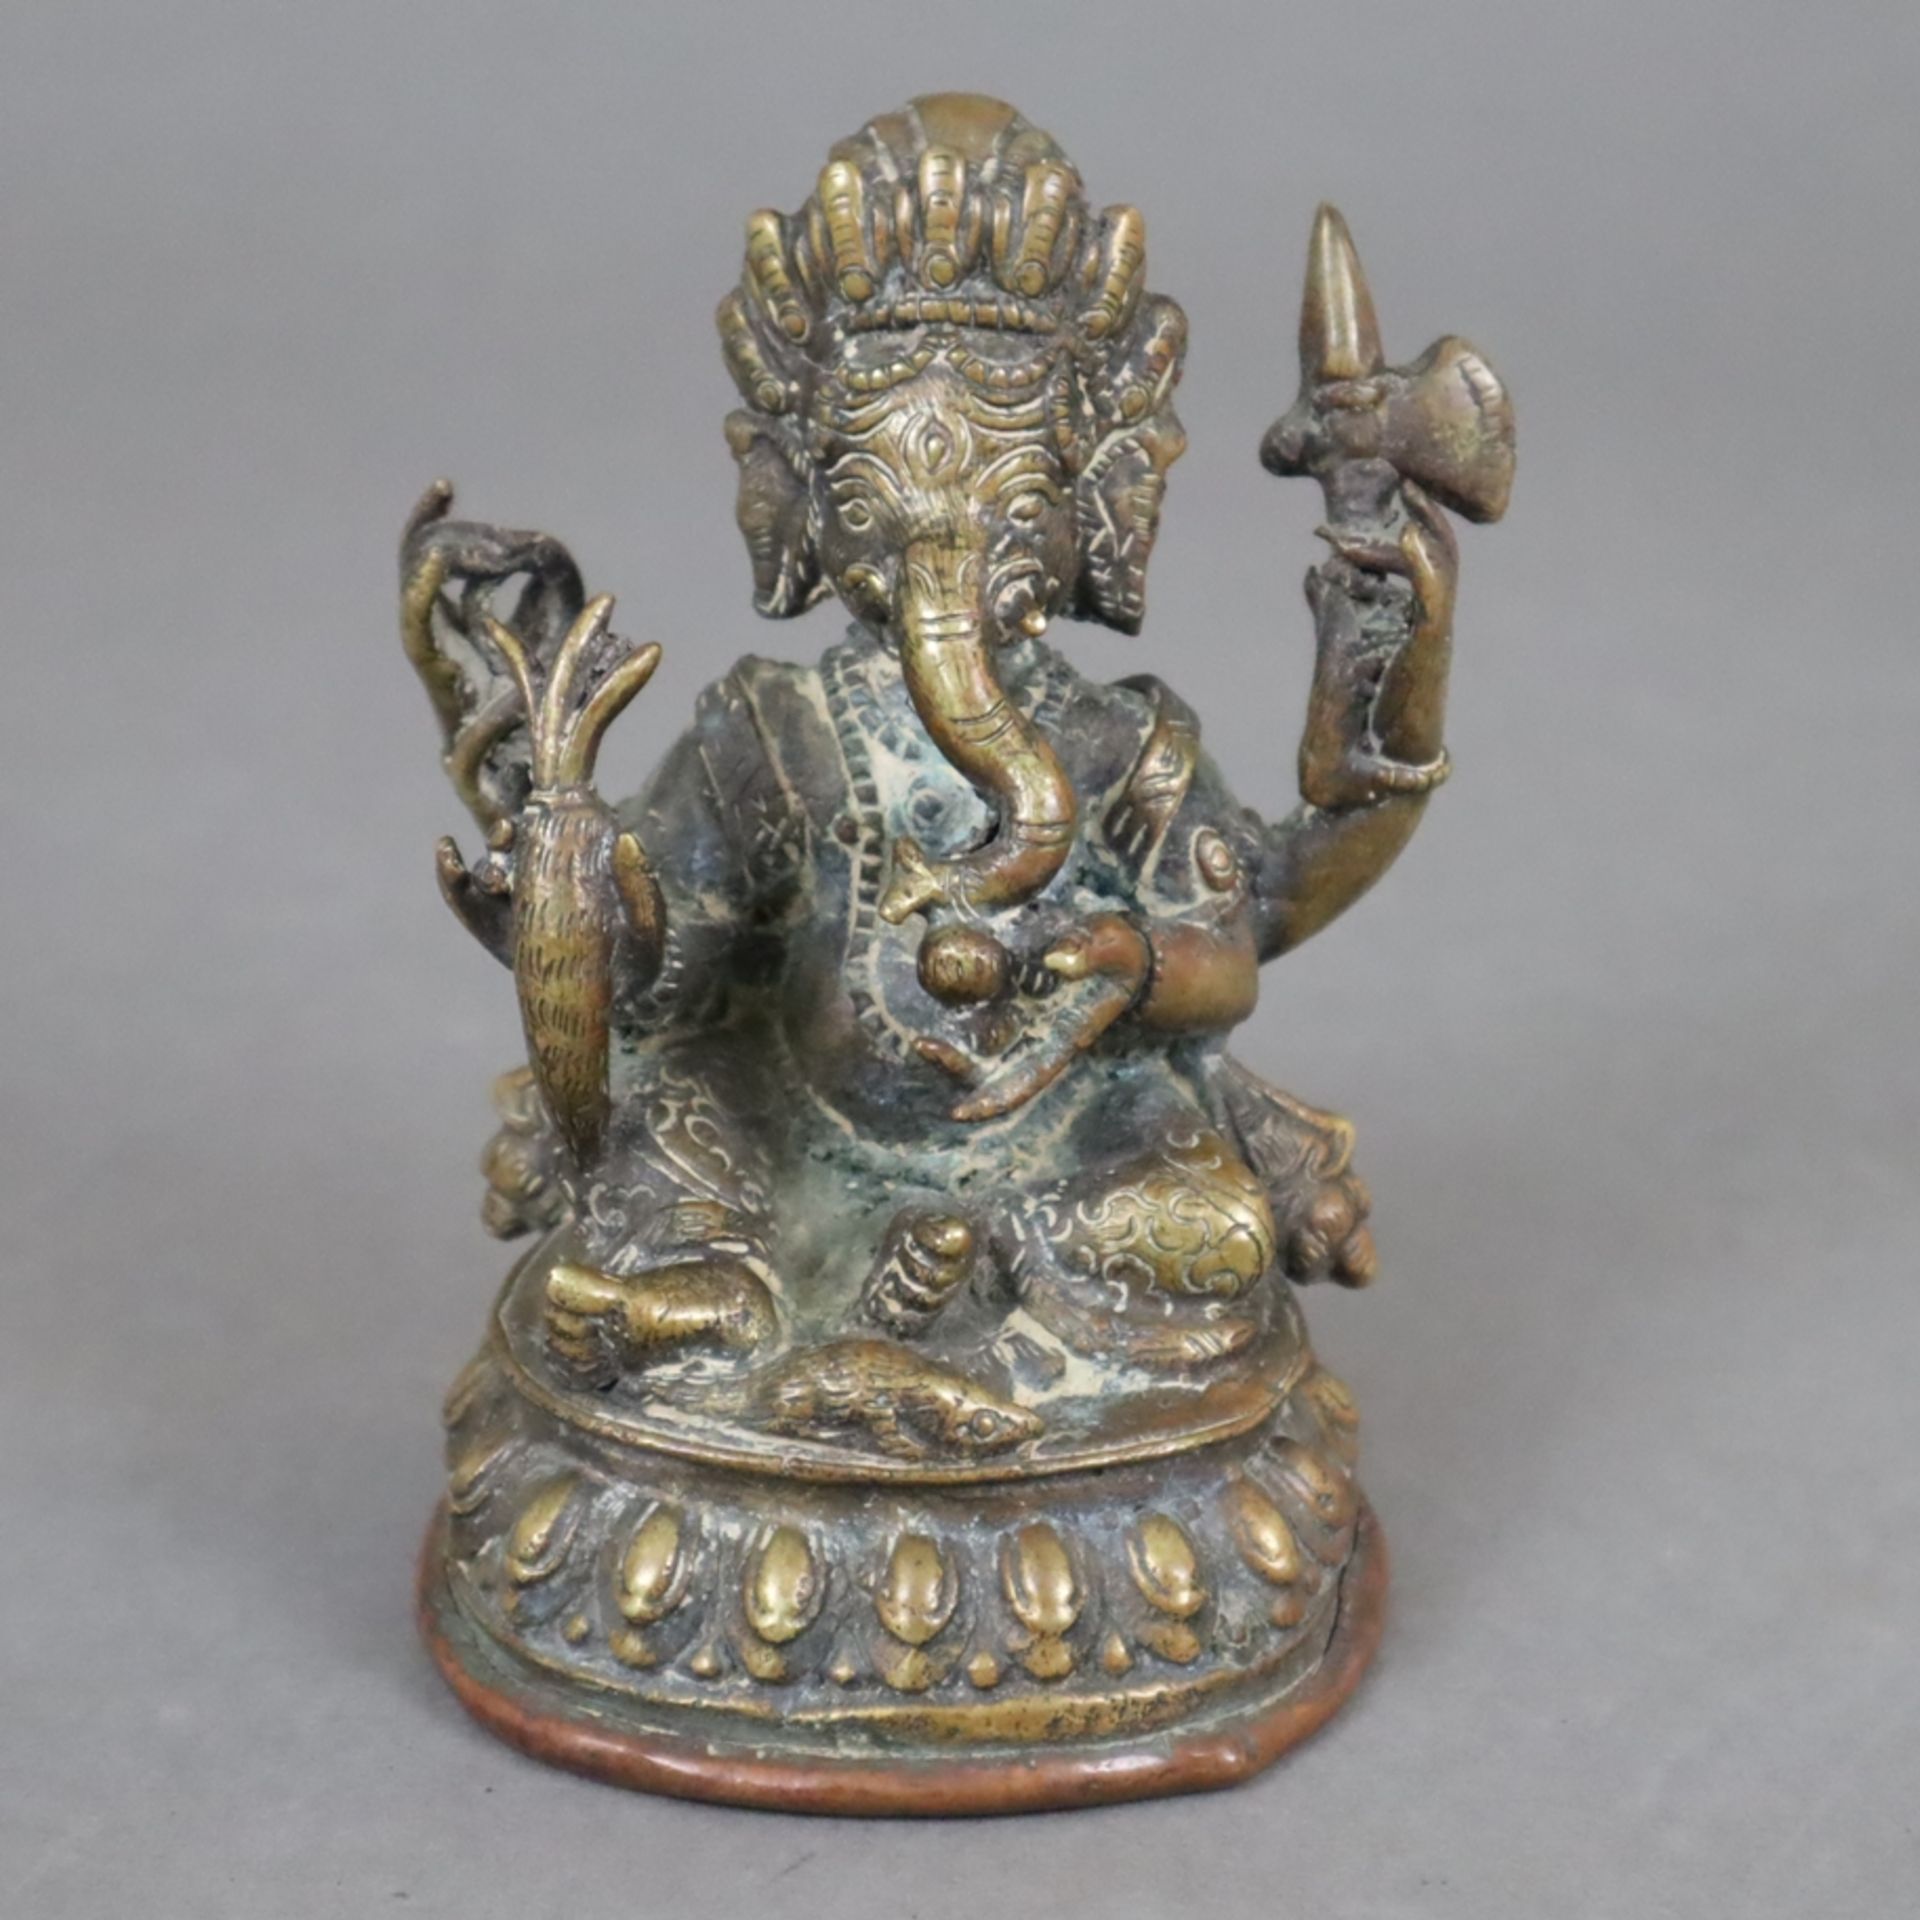 Ganesha - Nepal, Gelbbronze, in sitzender Haltung auf Lotospodest, Ratte zu seinen Füßen, vierarmig